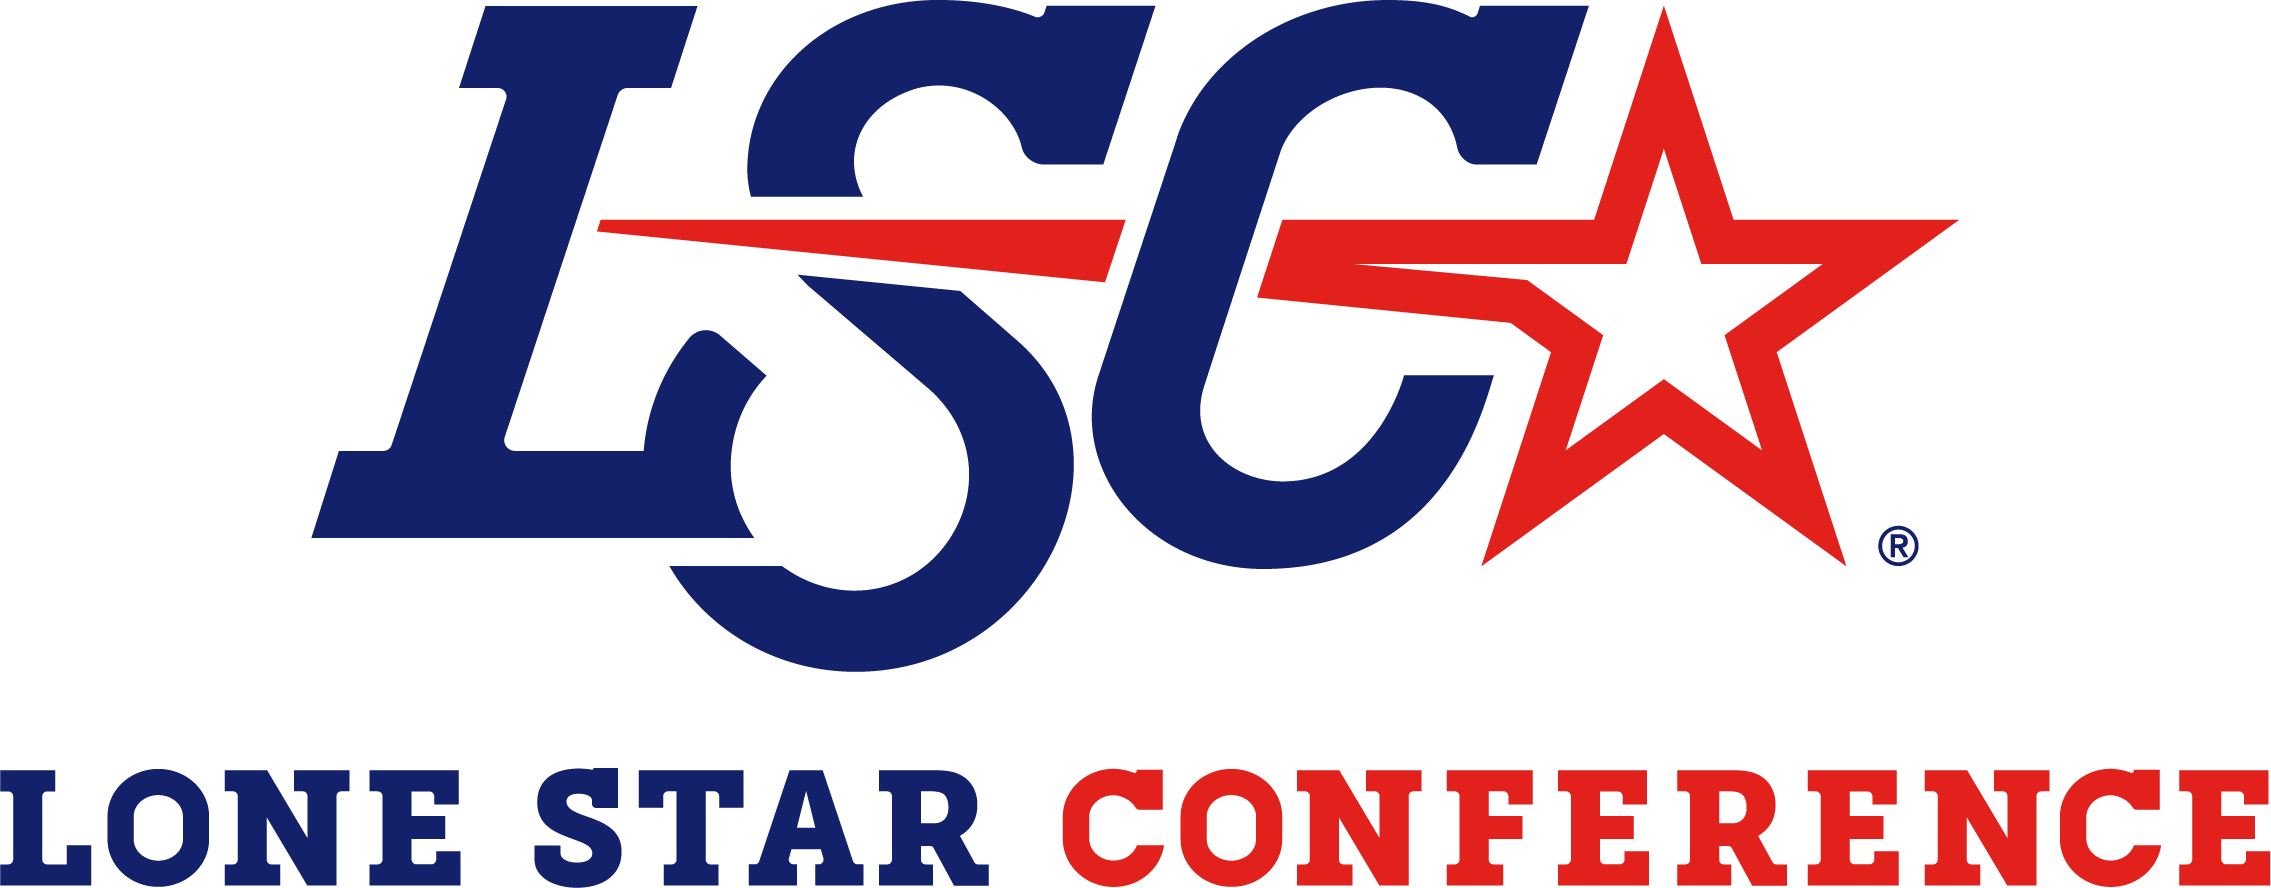 Lone Star Conference Championship Comerica Center